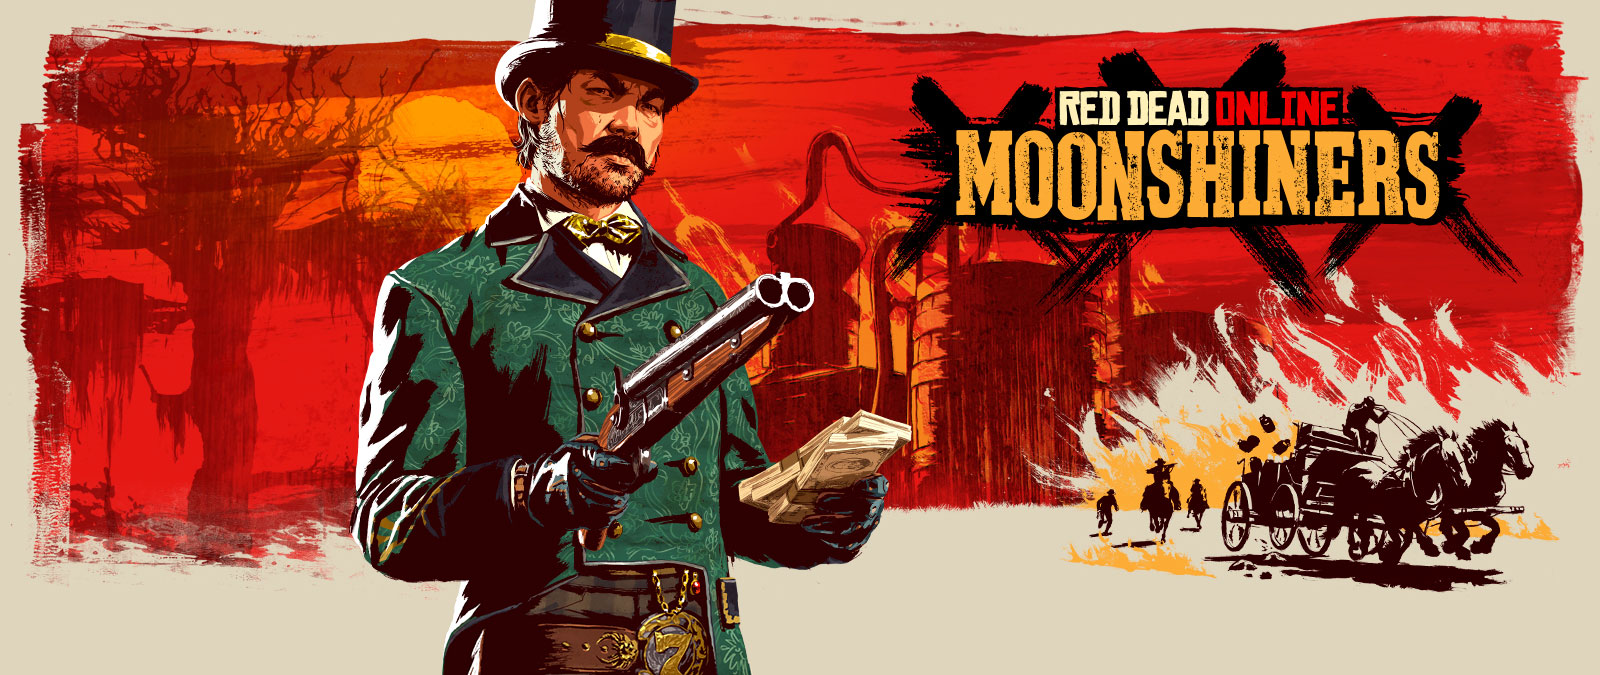 Red Dead Online, Moonshiners, человек зловещего вида с пистолетом и стопкой наличных в руках на фоне стилизованных изображений самогонного аппарата и погони за повозкой. 